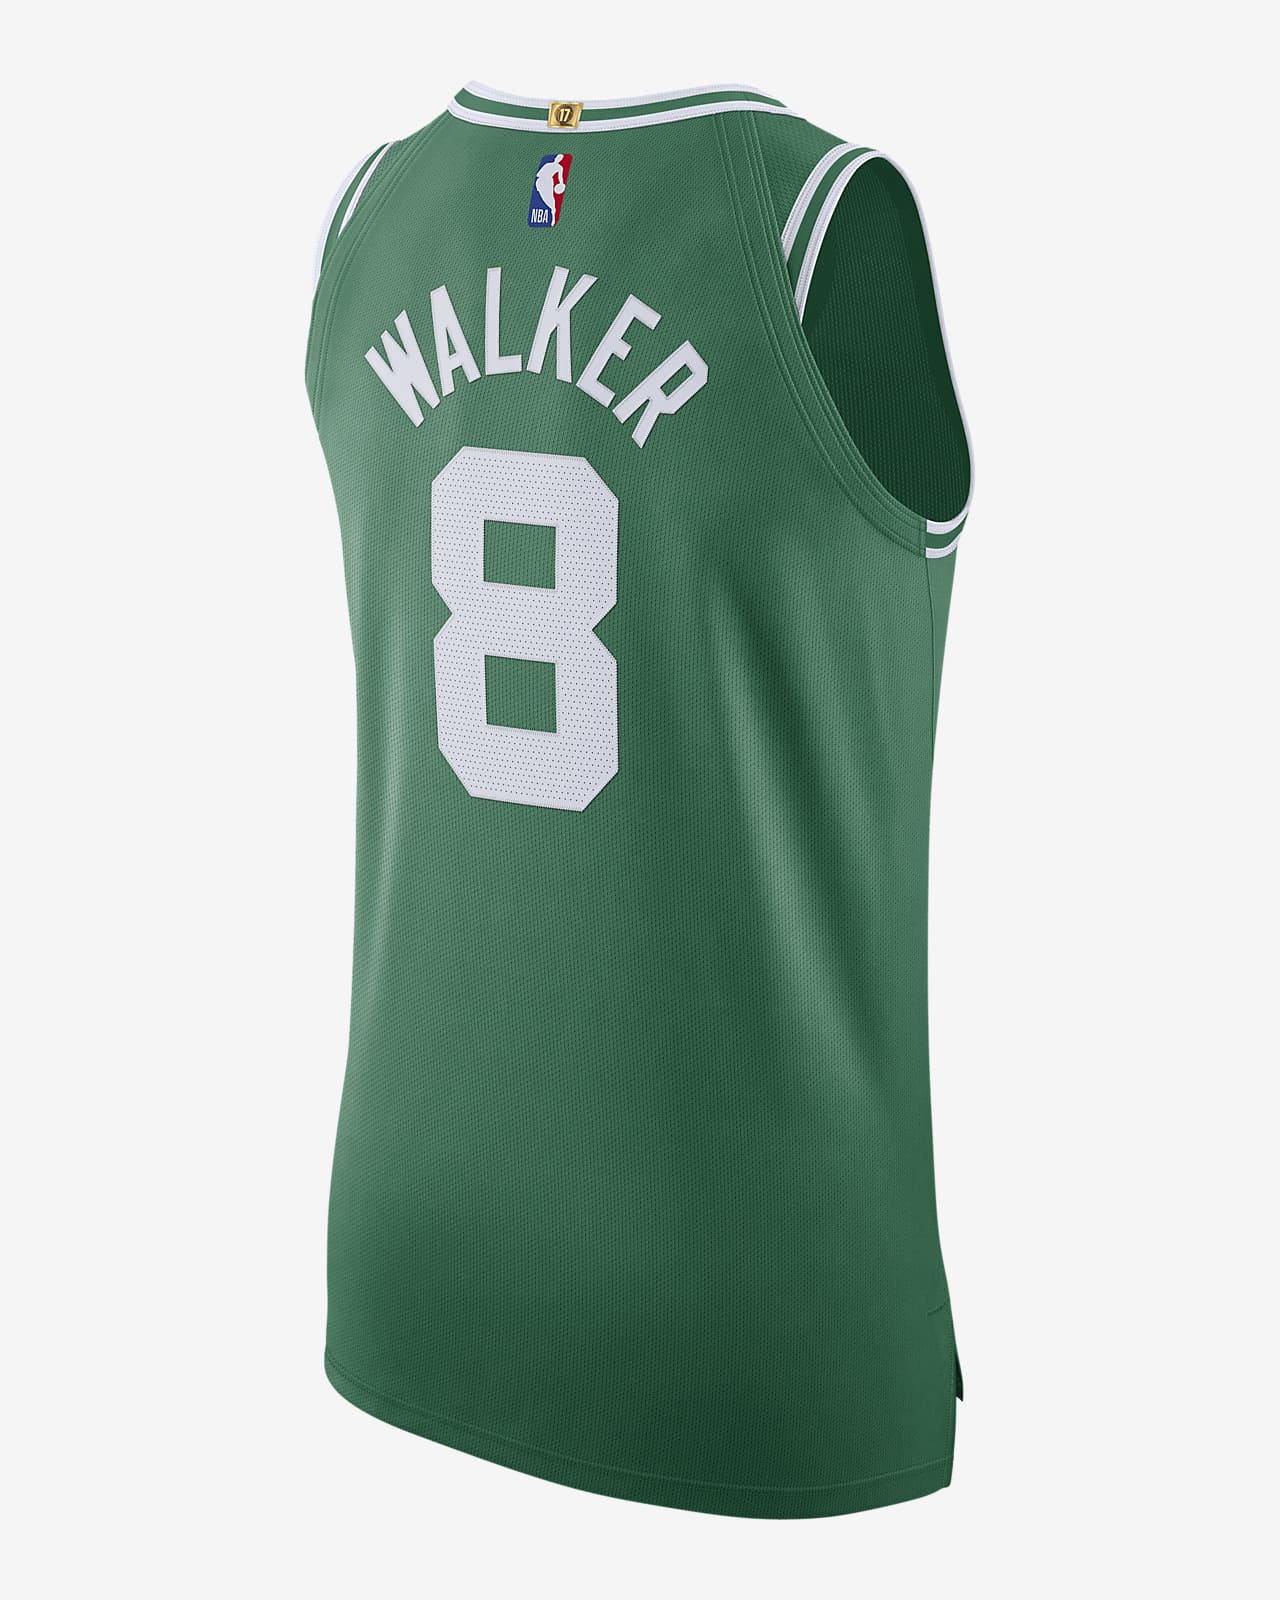 Kemba Walker Boston Celtics Nike Youth 2020/21 Swingman Jersey